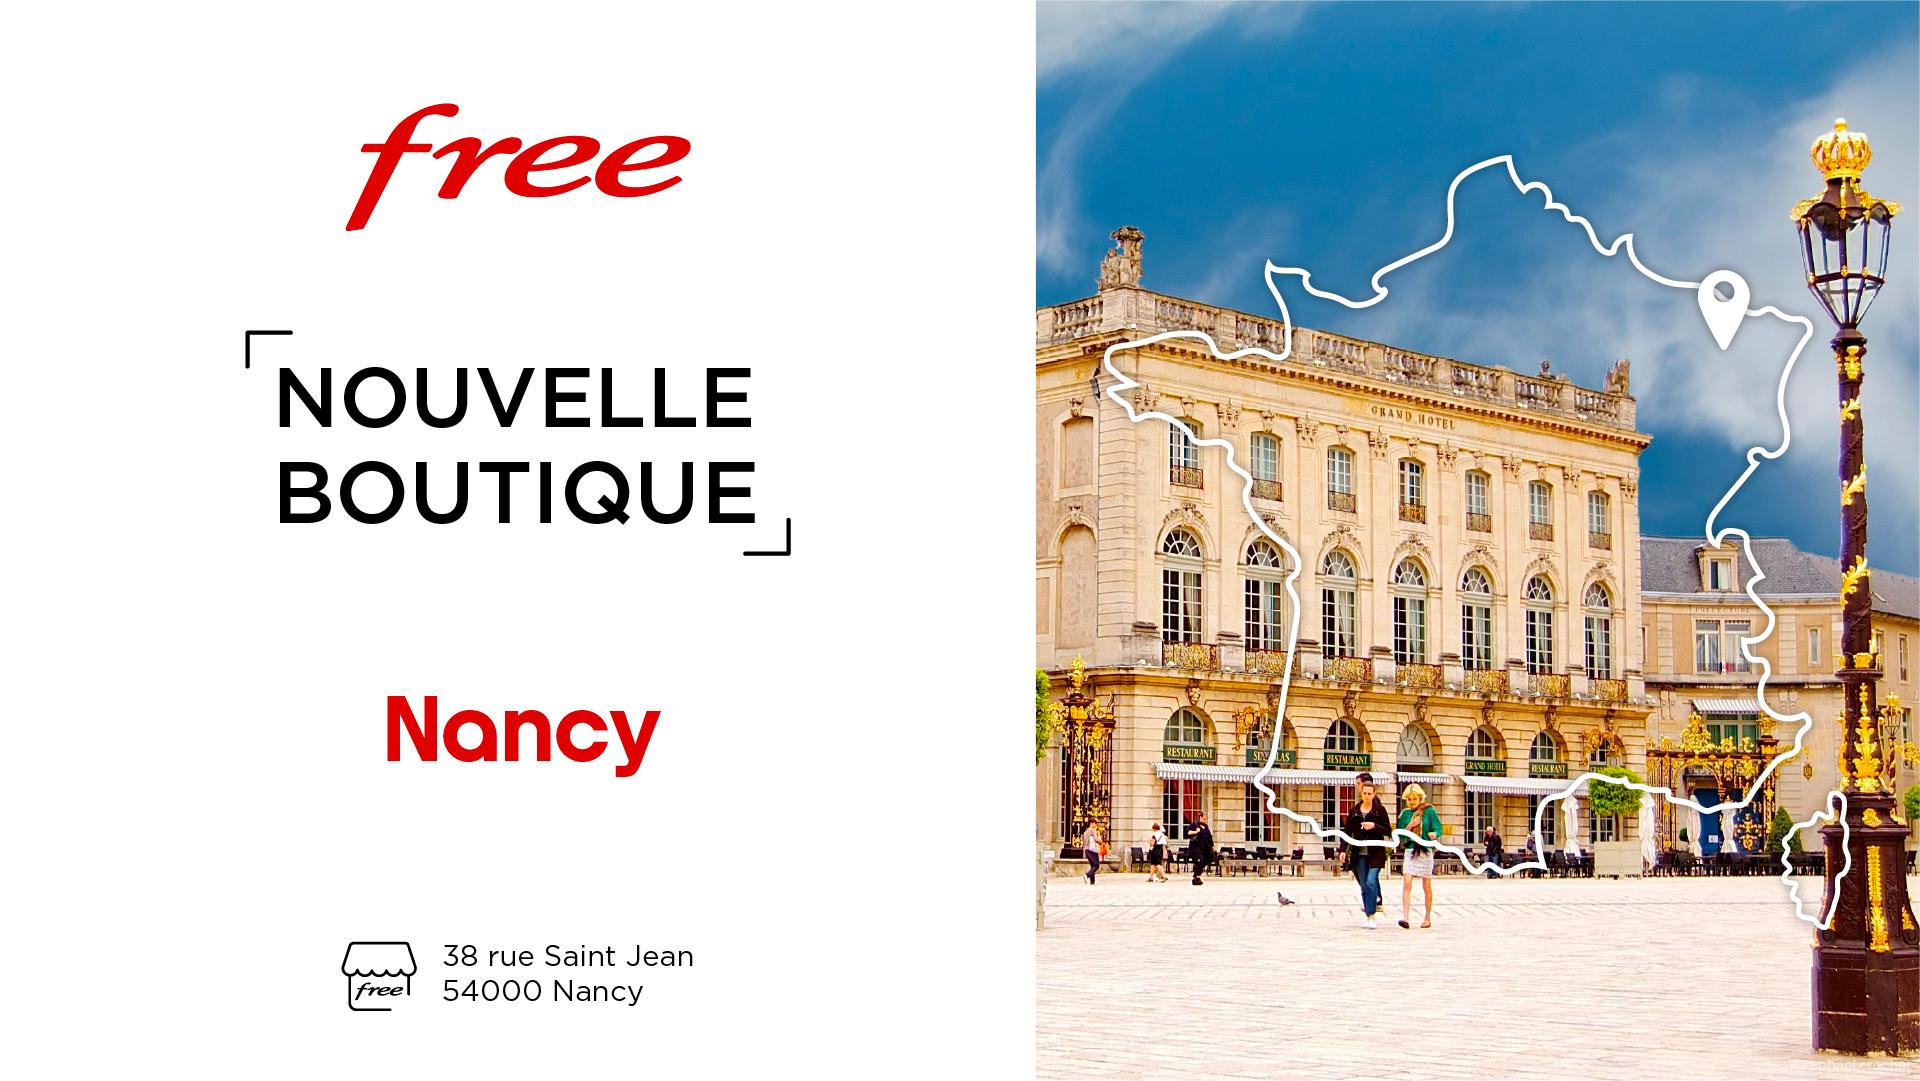 Découvrez la nouvelle boutique Free de Nancy